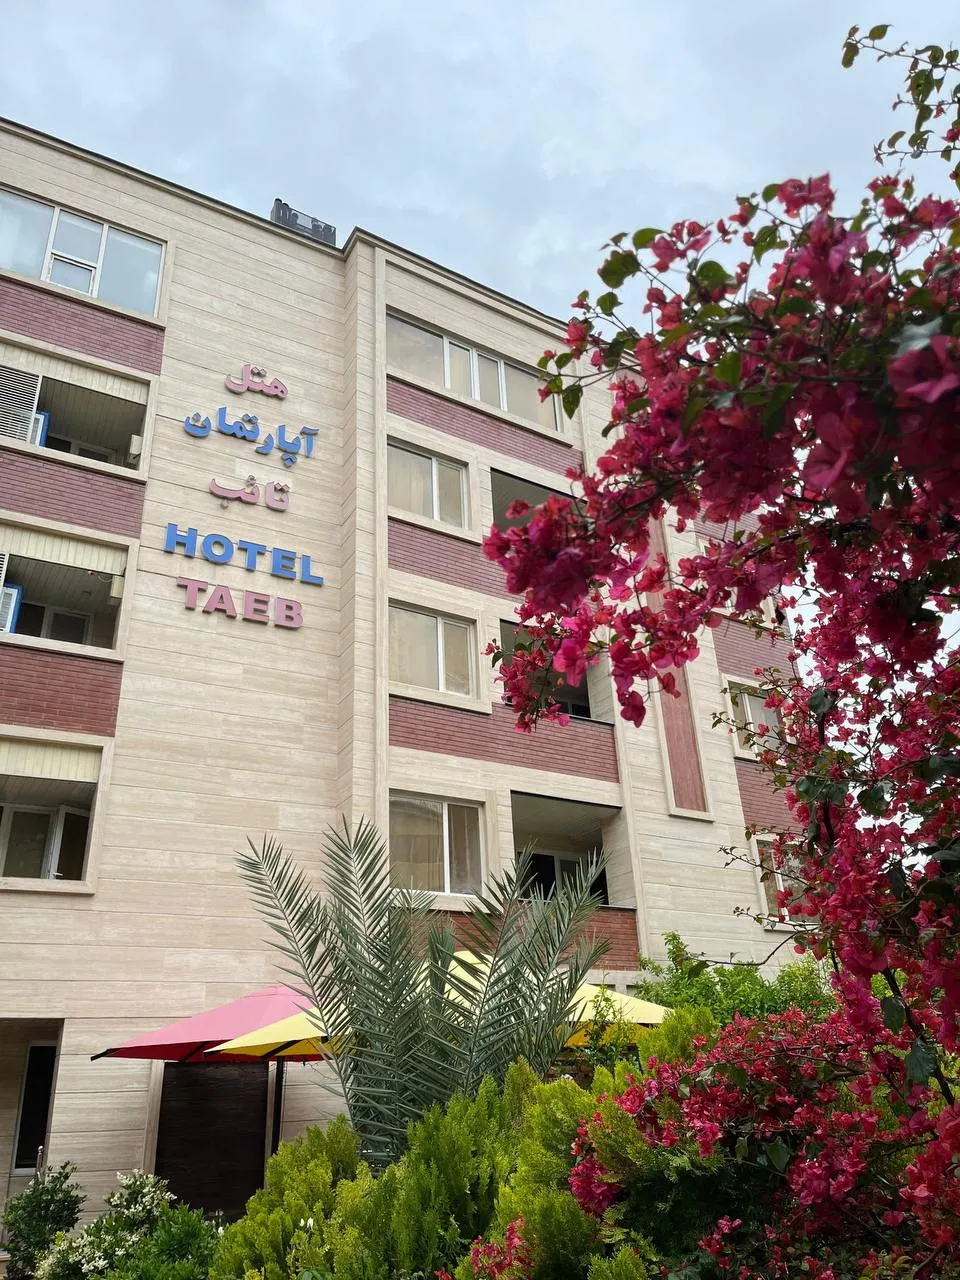 هتل آپارتمان تائب شیراز